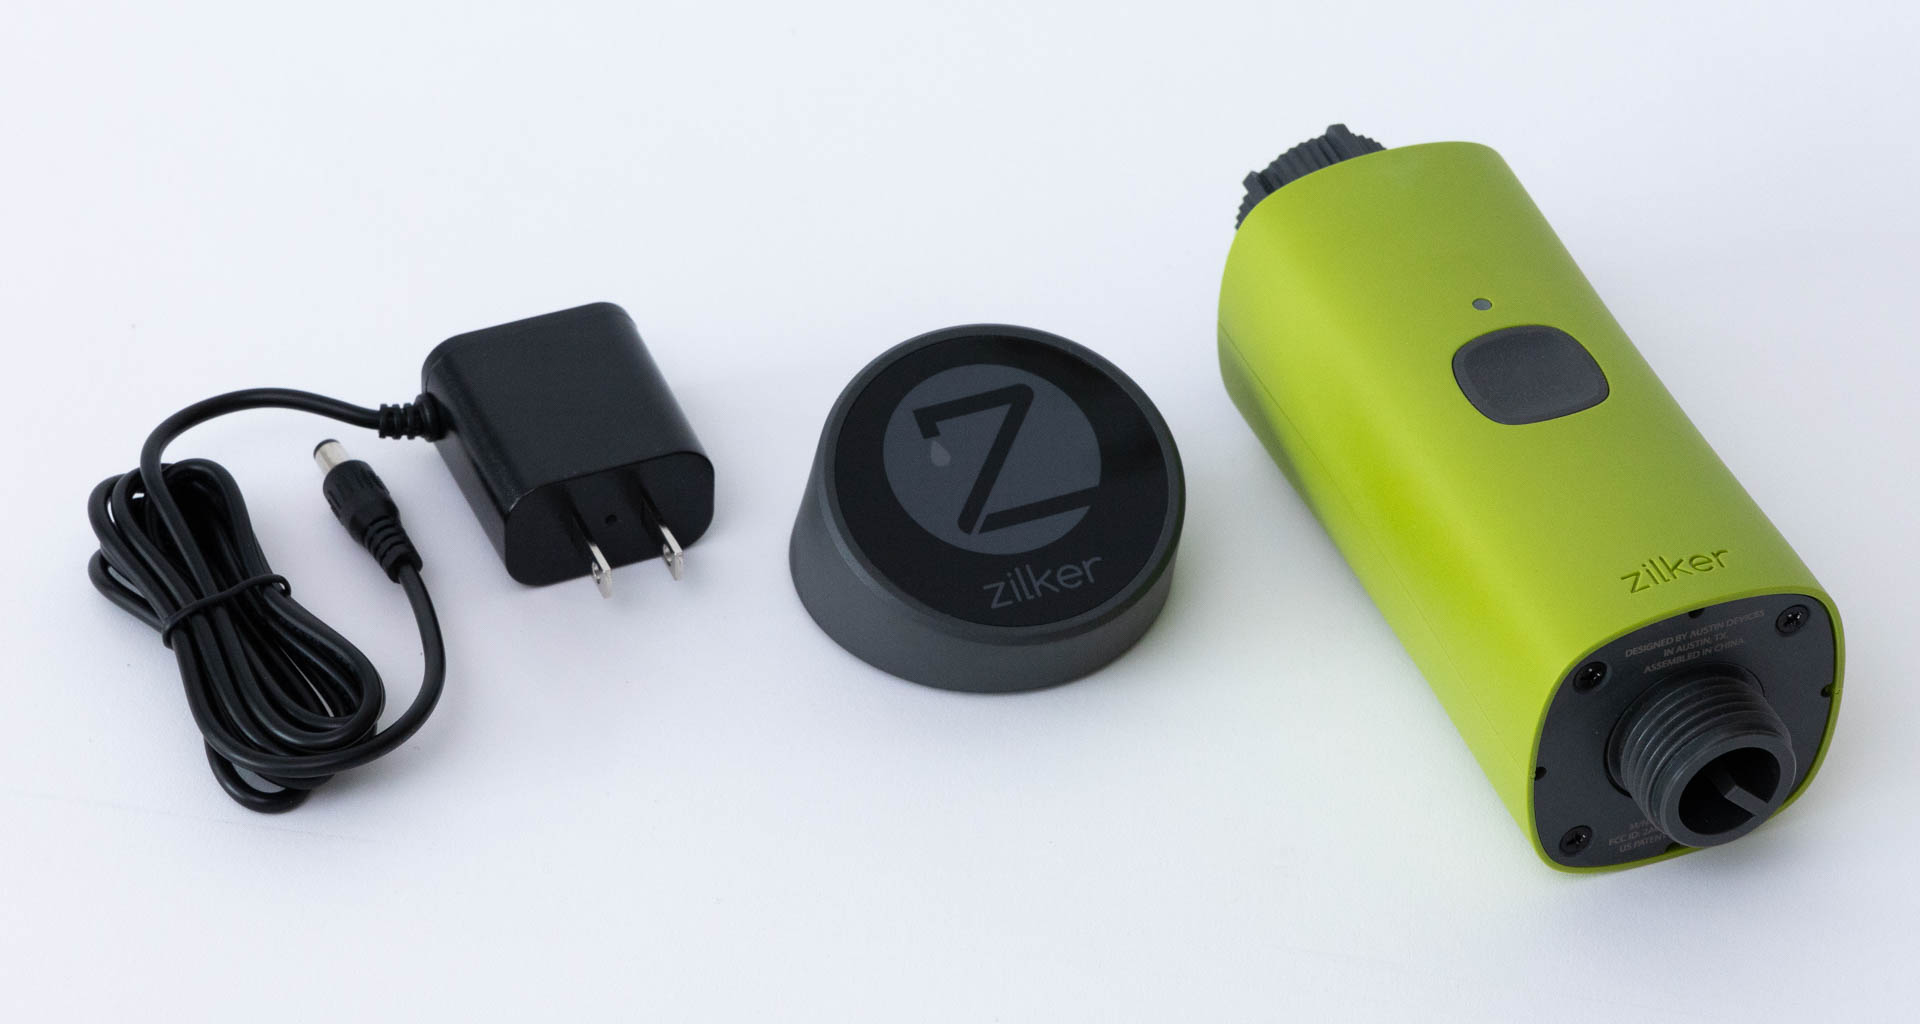 Zilker Smart Watering Starter Kit WiFi Remote Programmable Weather Based System 